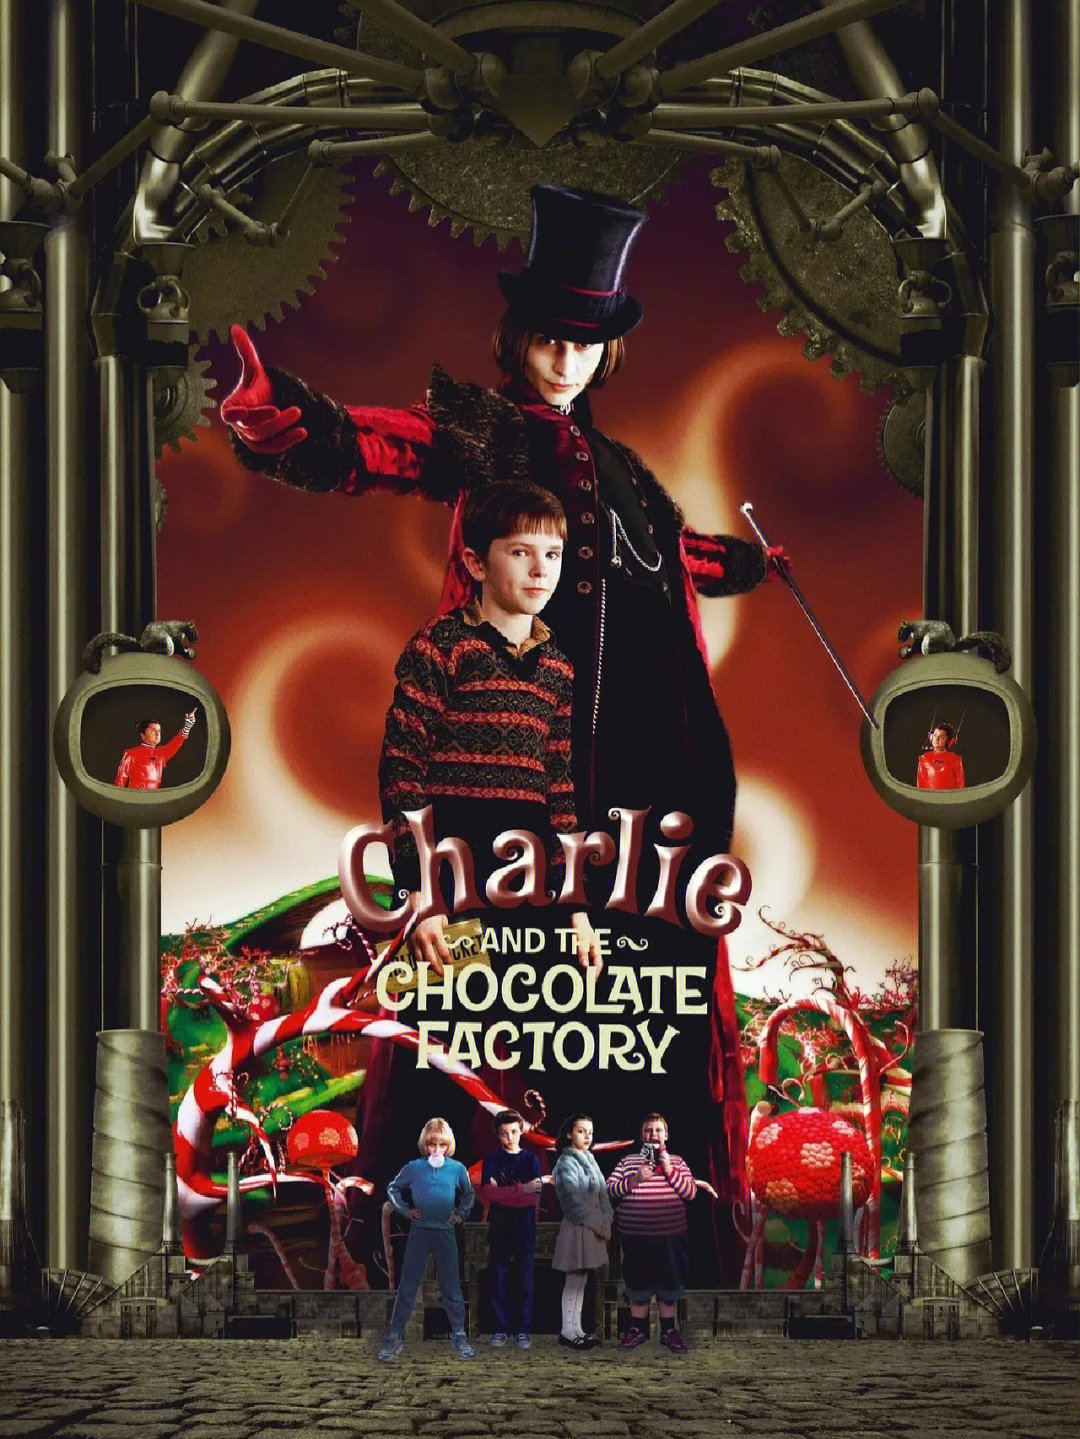 98片名《查理和巧克力工厂》类型:喜剧/奇幻/冒险上线时间:05年7月